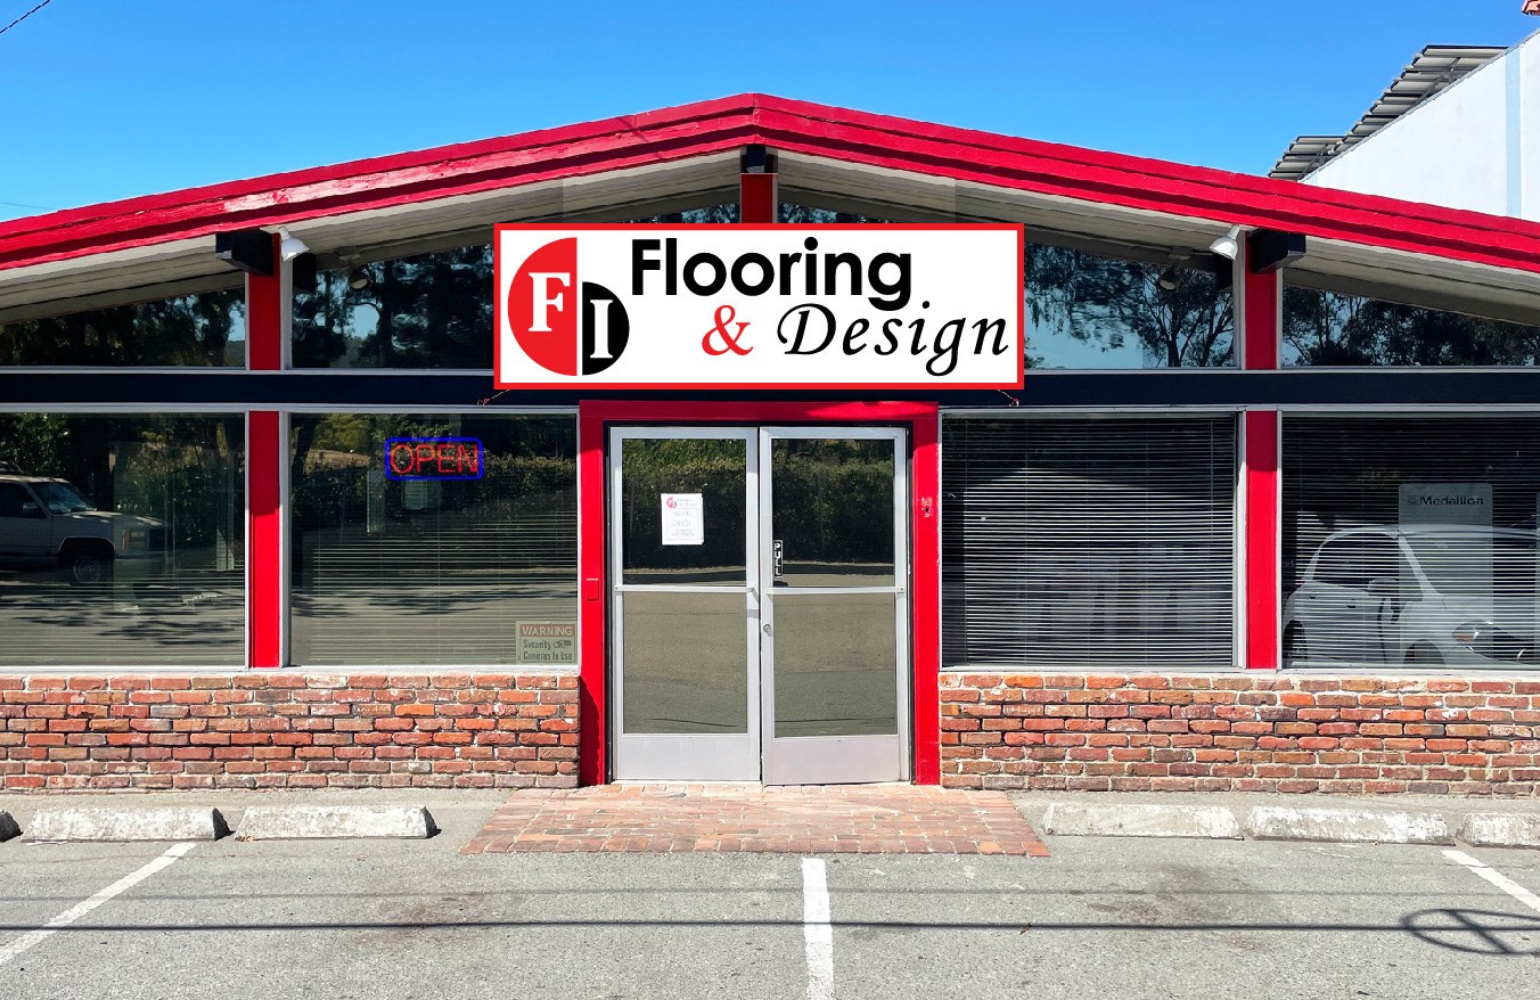 FI Flooring and Design